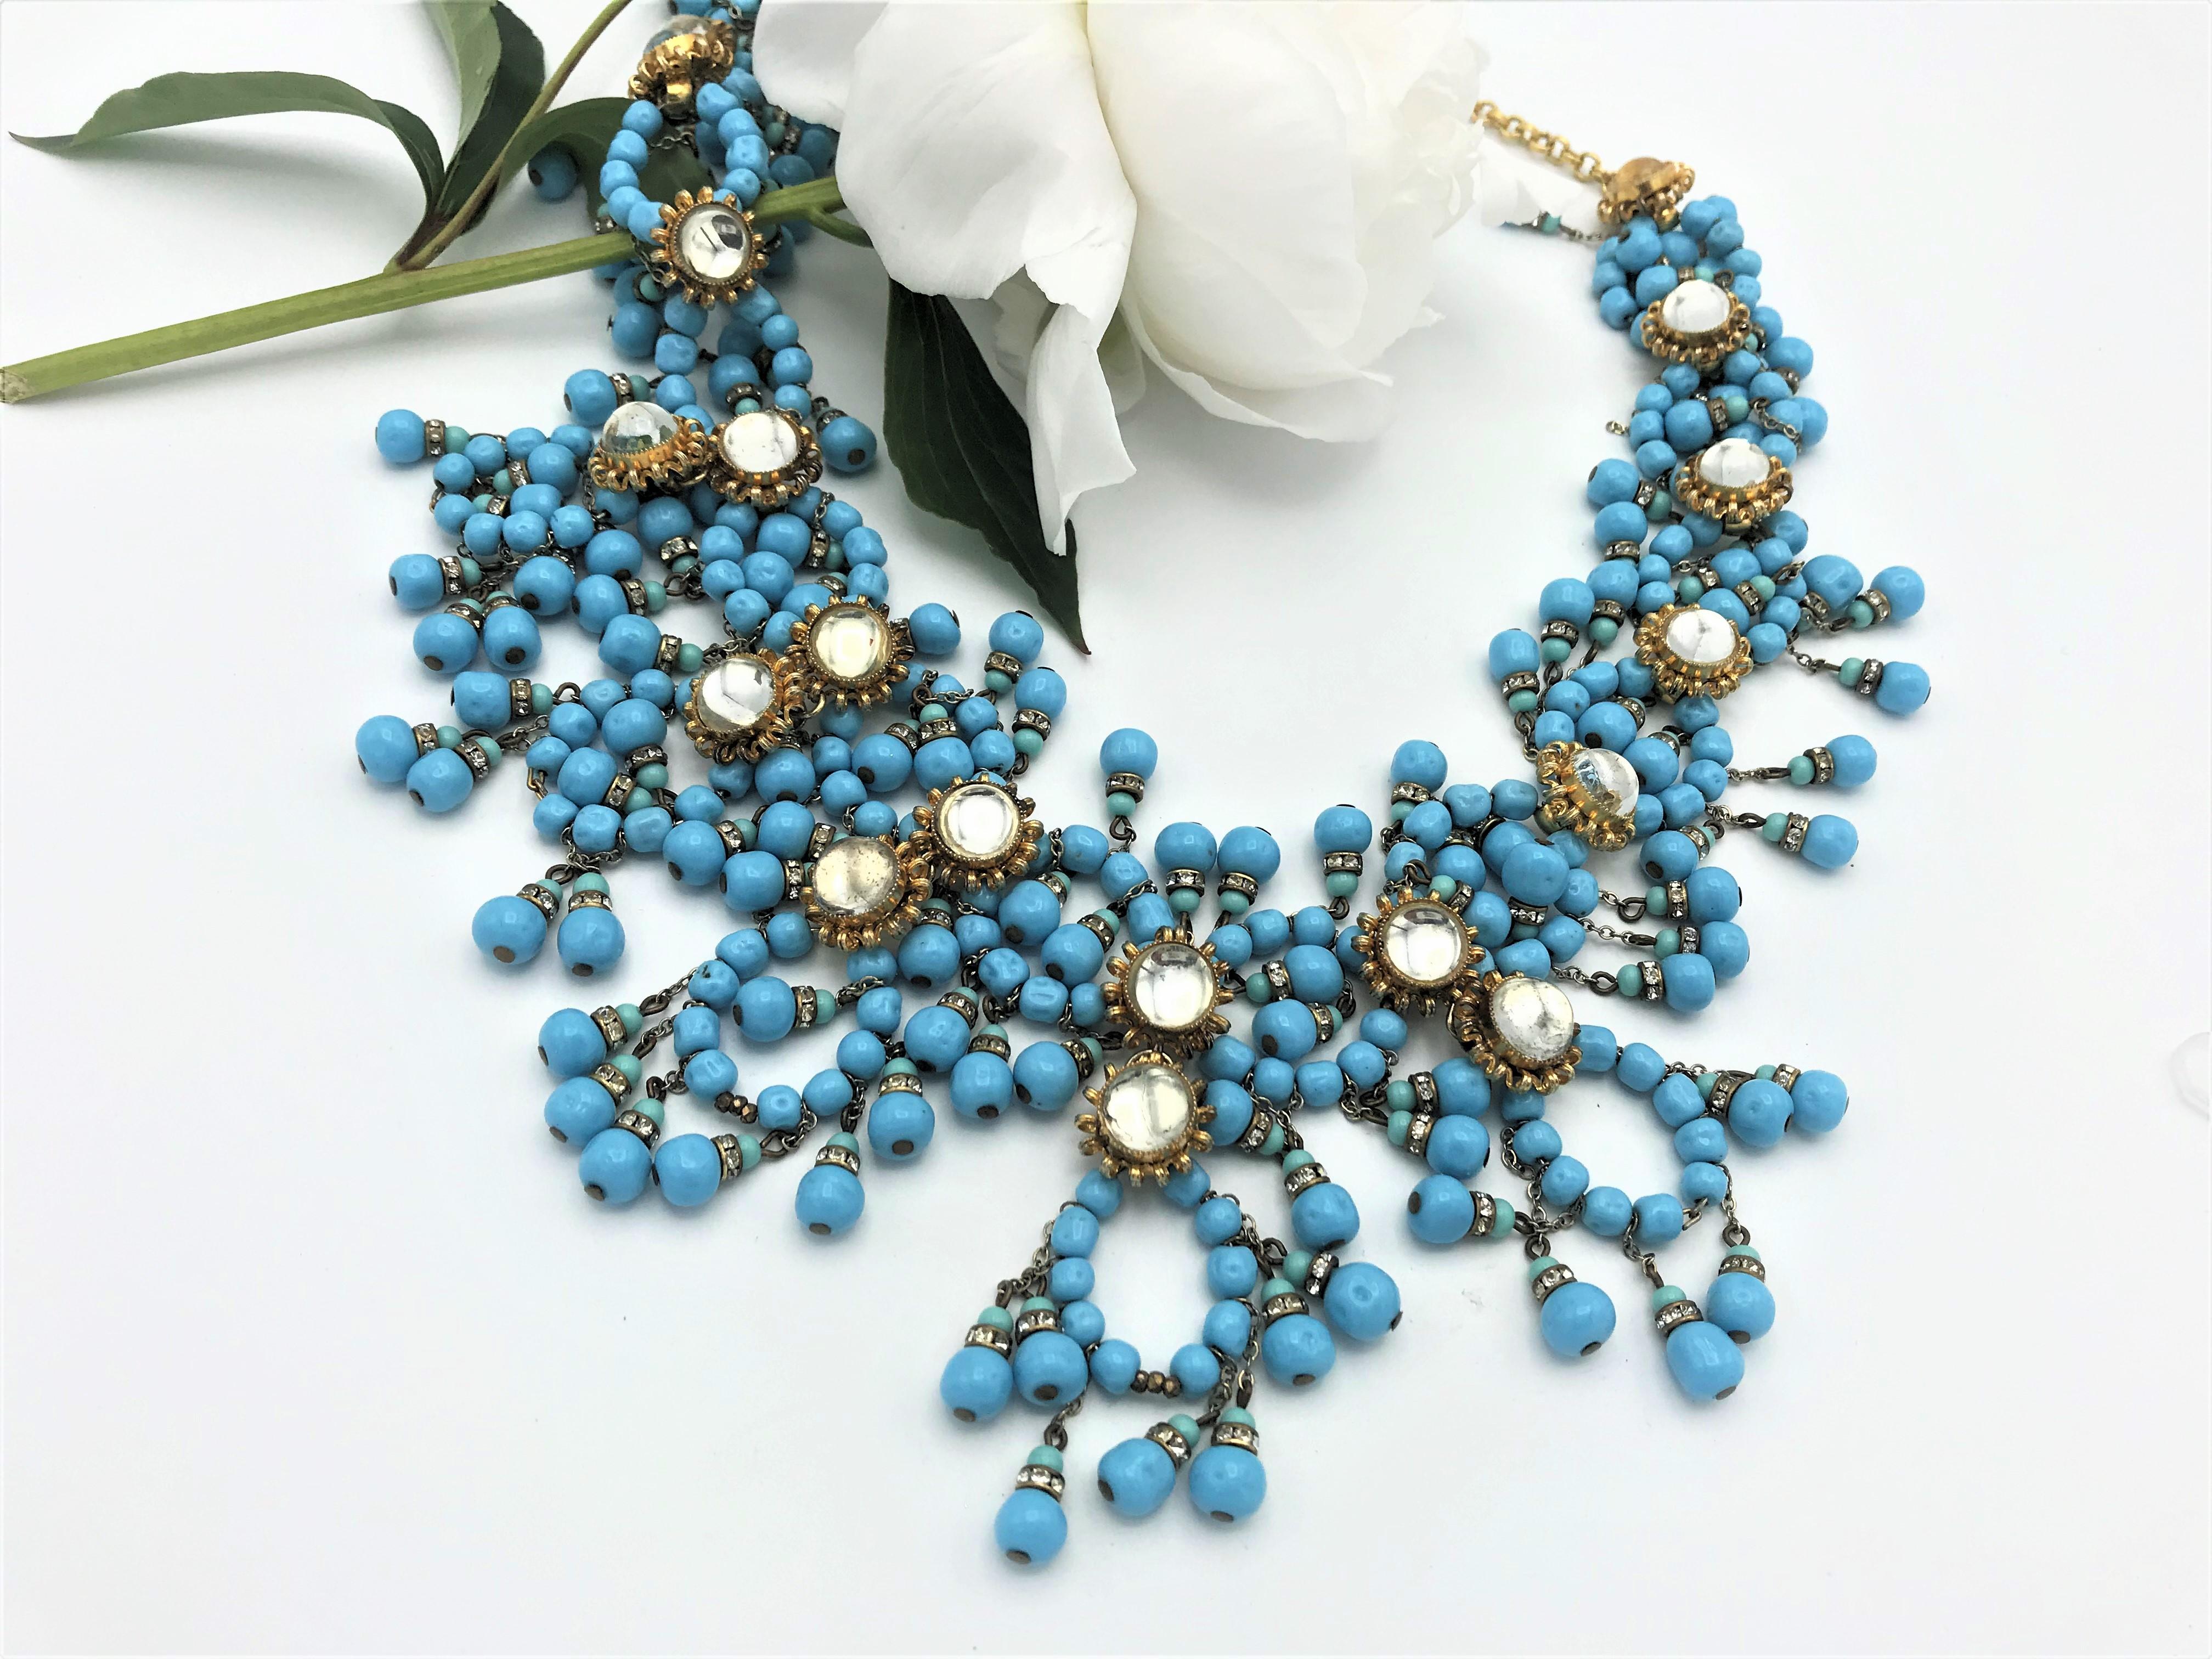 Un magnifique collier imaginatif conçu par William de Lillo. Composé de nombreuses perles de verre de couleur turquoise, de différents cercles suspendus à de nombreux petits pompons turquoise, ainsi que de rosettes avec des strass ronds et